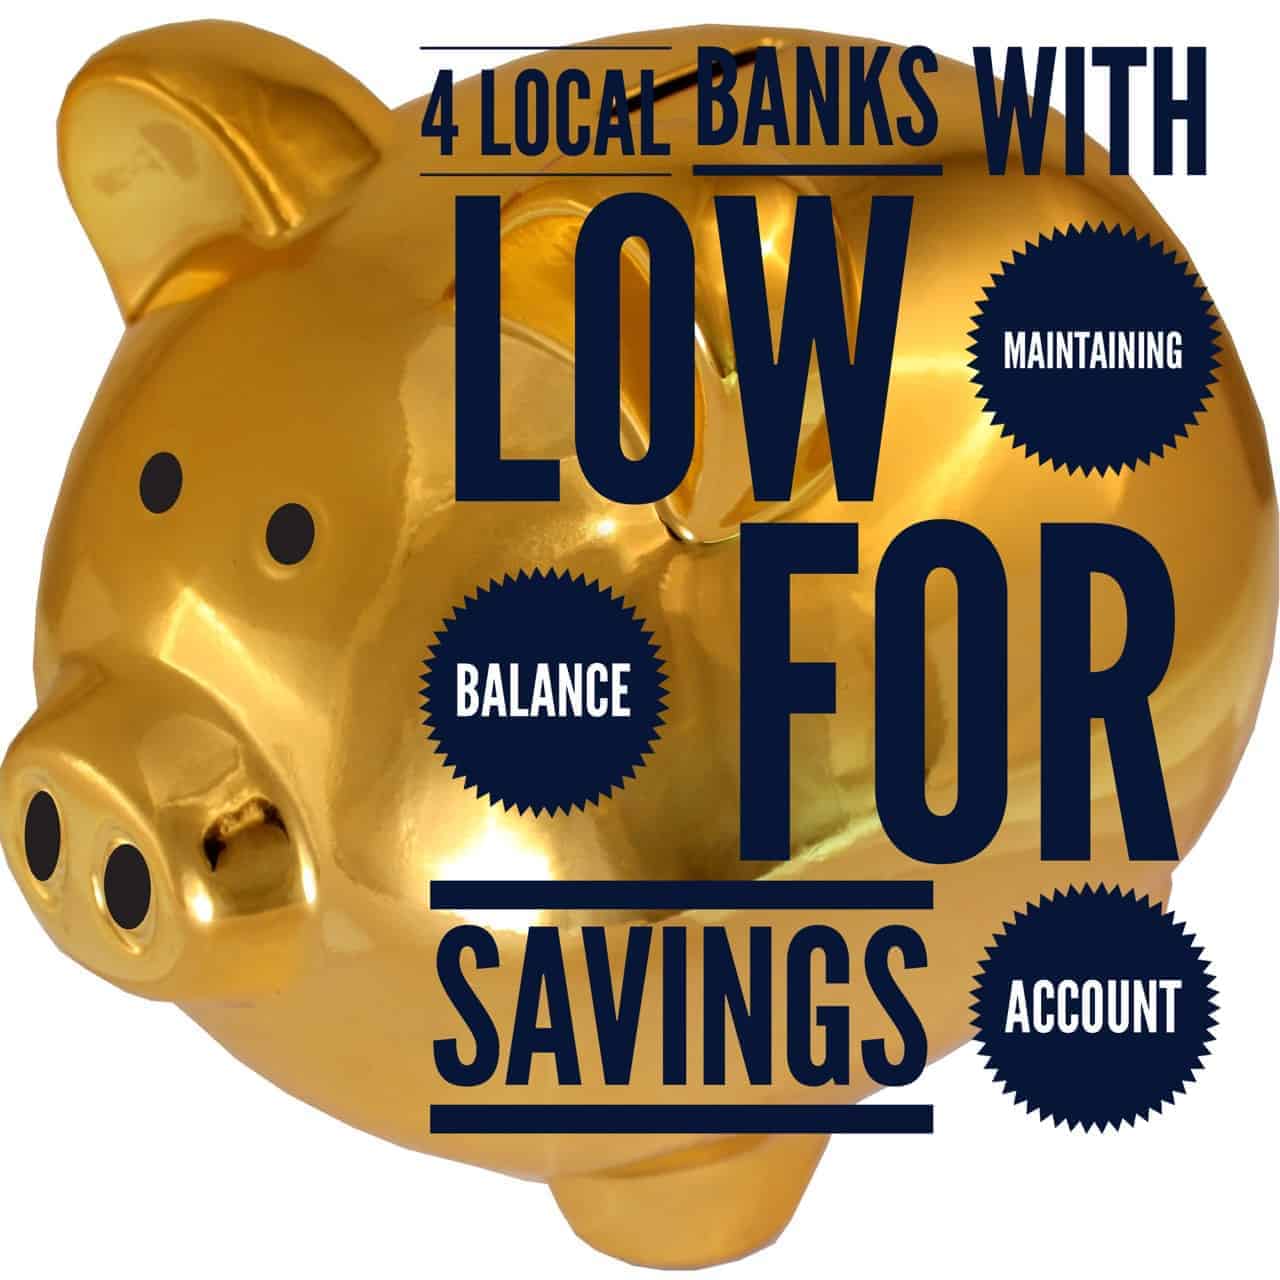 A piggy bank with low balance savings.